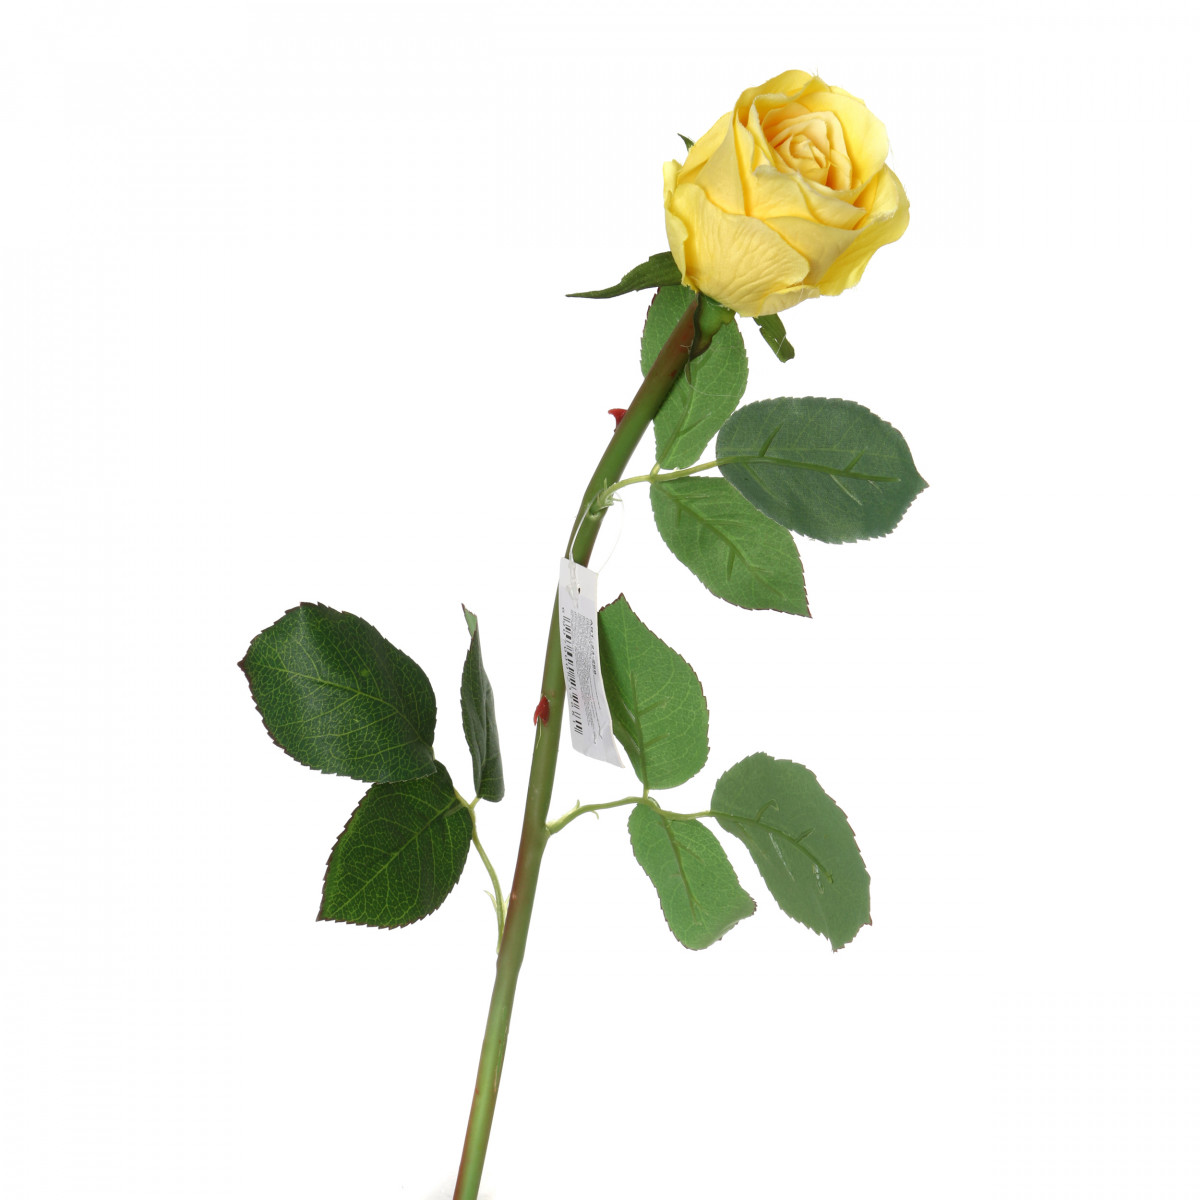 Искусственный цветок Aldwin  (50 см), размер 50 см arm301527 Искусственный цветок Aldwin  (50 см) - фото 1